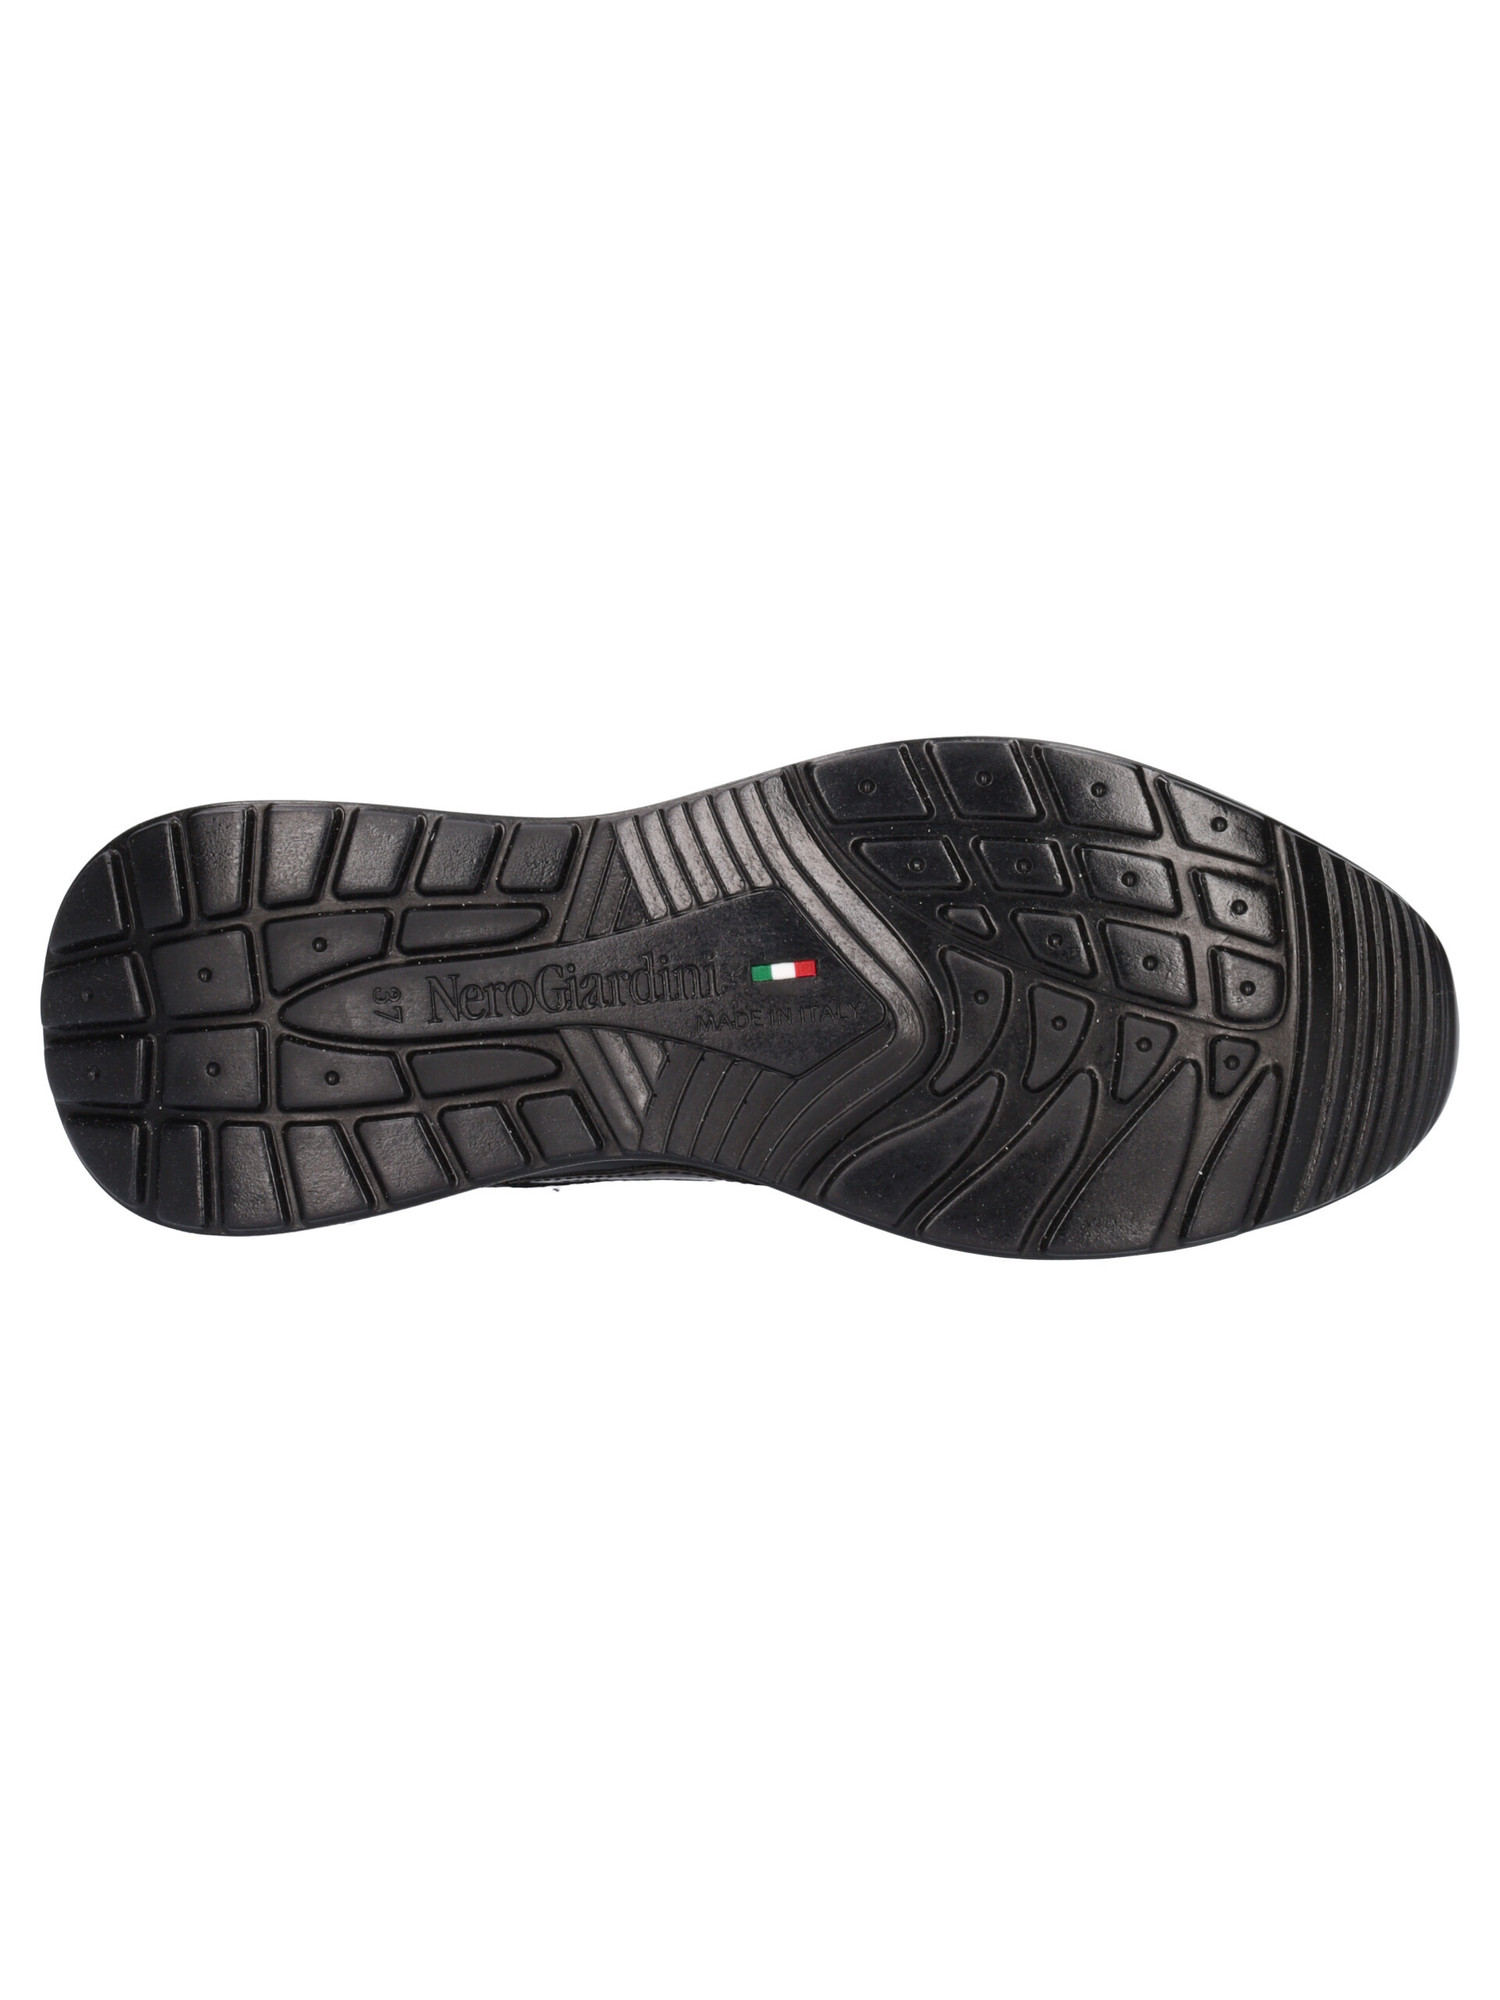 sneaker-nero-giardini-da-donna-nera-46d552